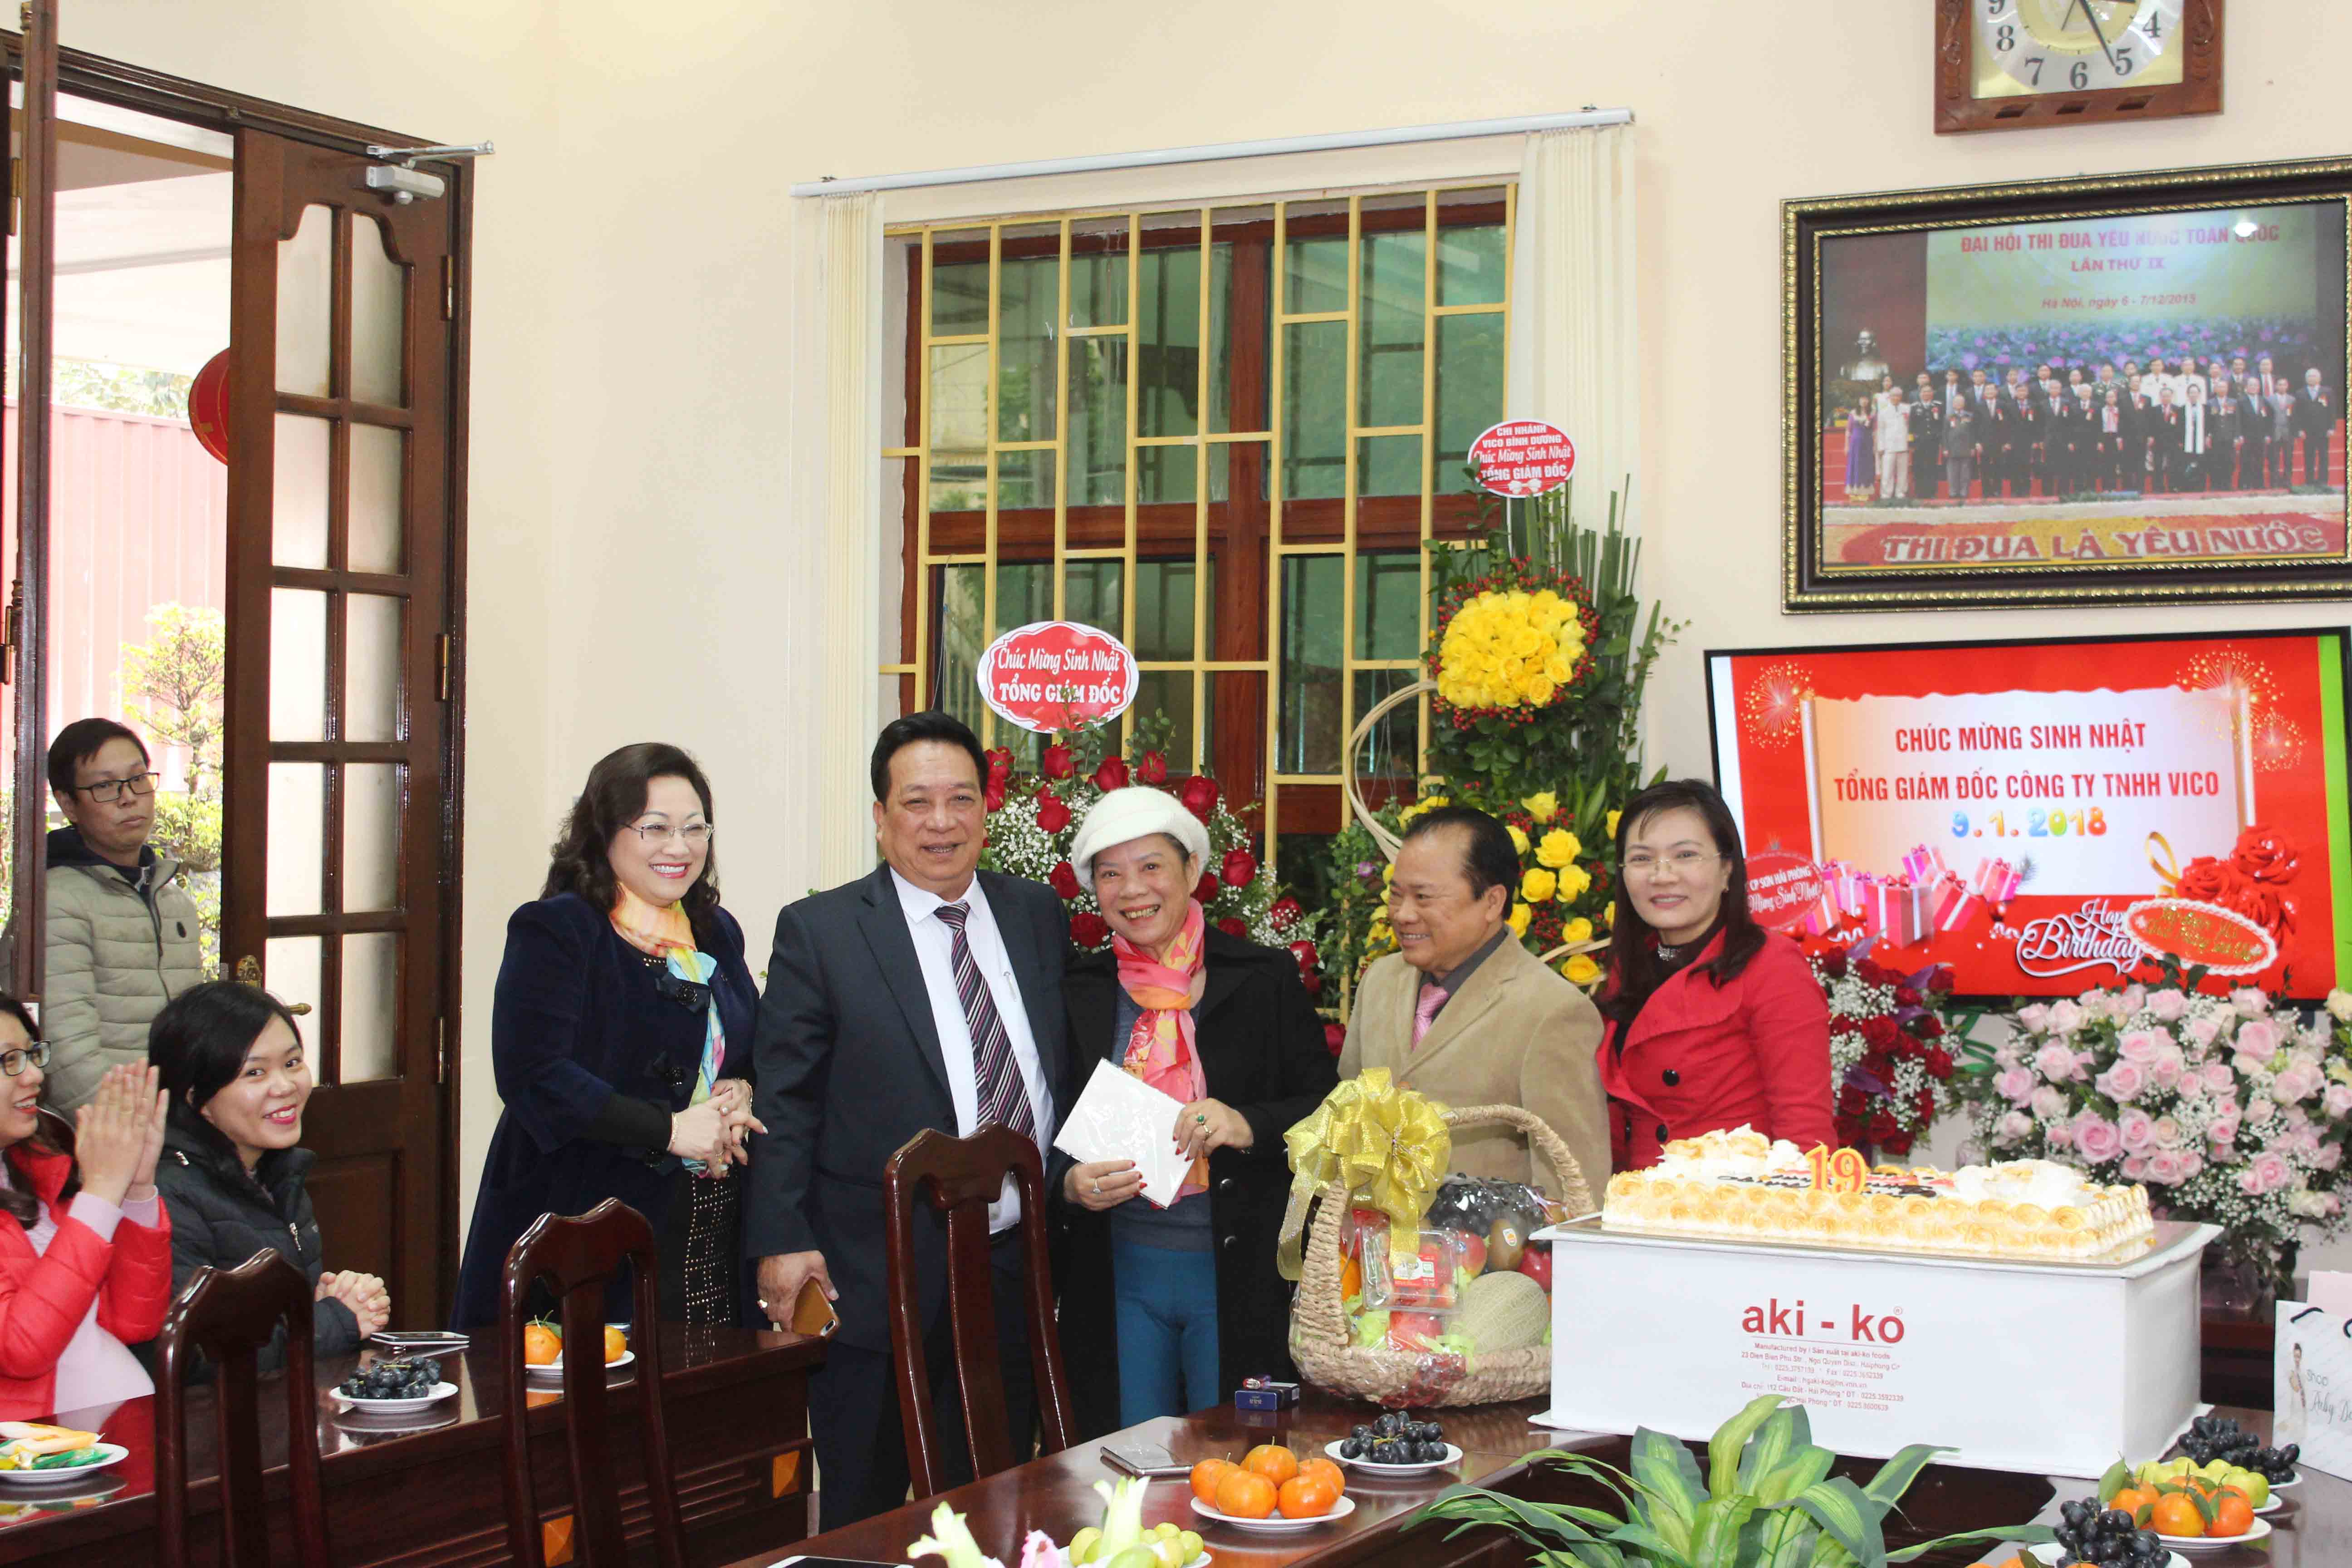 Chúc mừng sinh nhật Tổng Giám đốc Nguyễn Mộng Lân